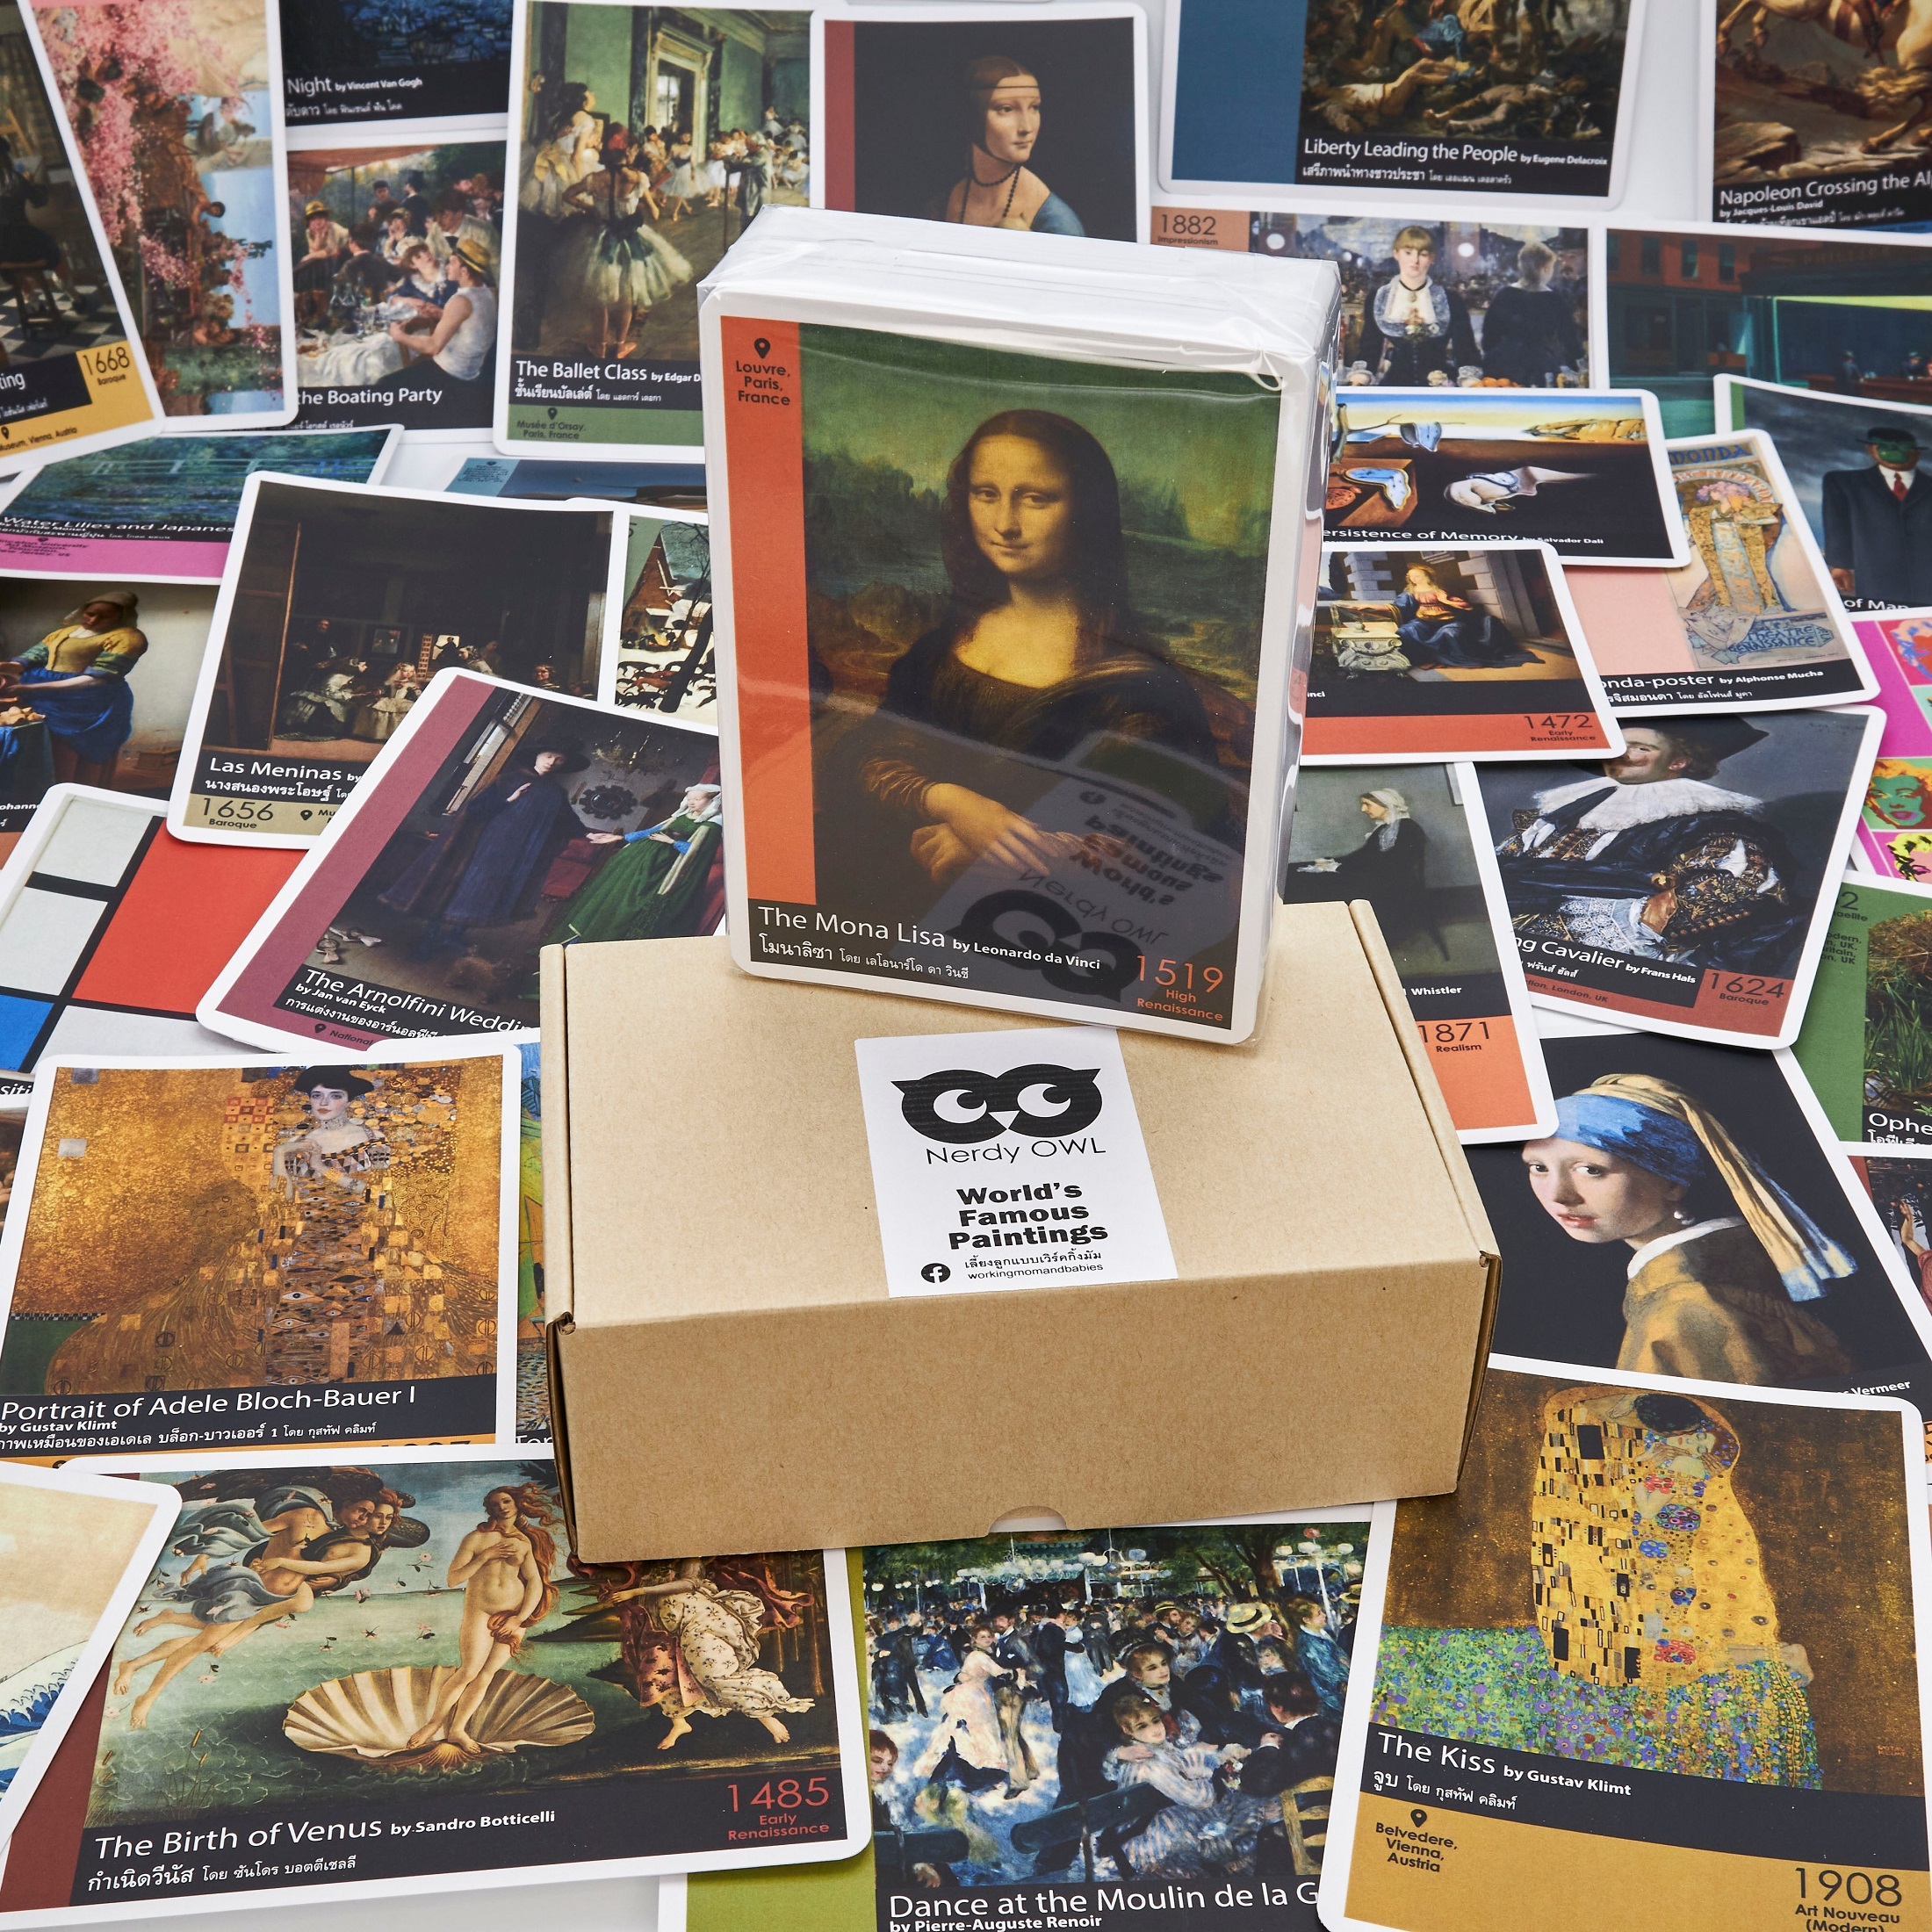 แฟลชการ์ด ภาพเขียนสำคัญของโลก Flash Cards World's Famous Paintings บัตรคำ การ์ดคำศัพท์ เนิร์ดดี้อาว (Nerdy Owl) จำนวนมากที่สุดถึง 108 ใบ ของเล่นเสริมพัฒนาการ